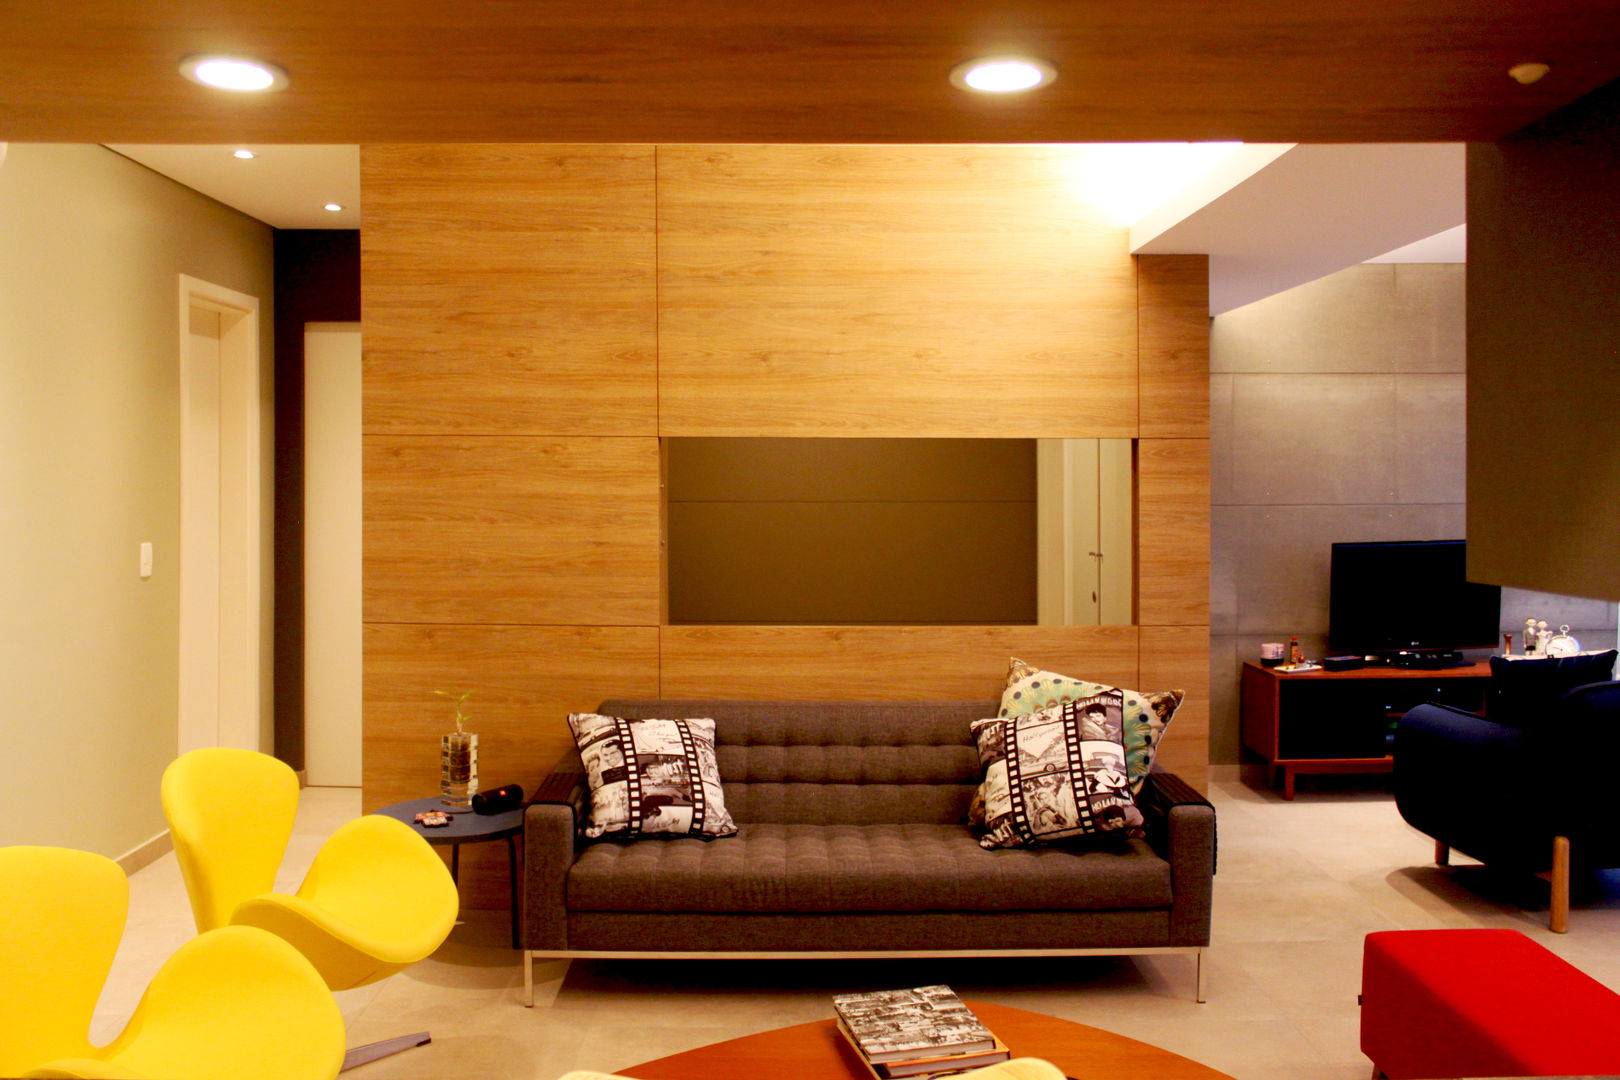 Reforma Residencial: Este pequeno apartamento ganha amplos espaços com um projeto bem planejado., Marcos Takiguthi Arquiteto Marcos Takiguthi Arquiteto